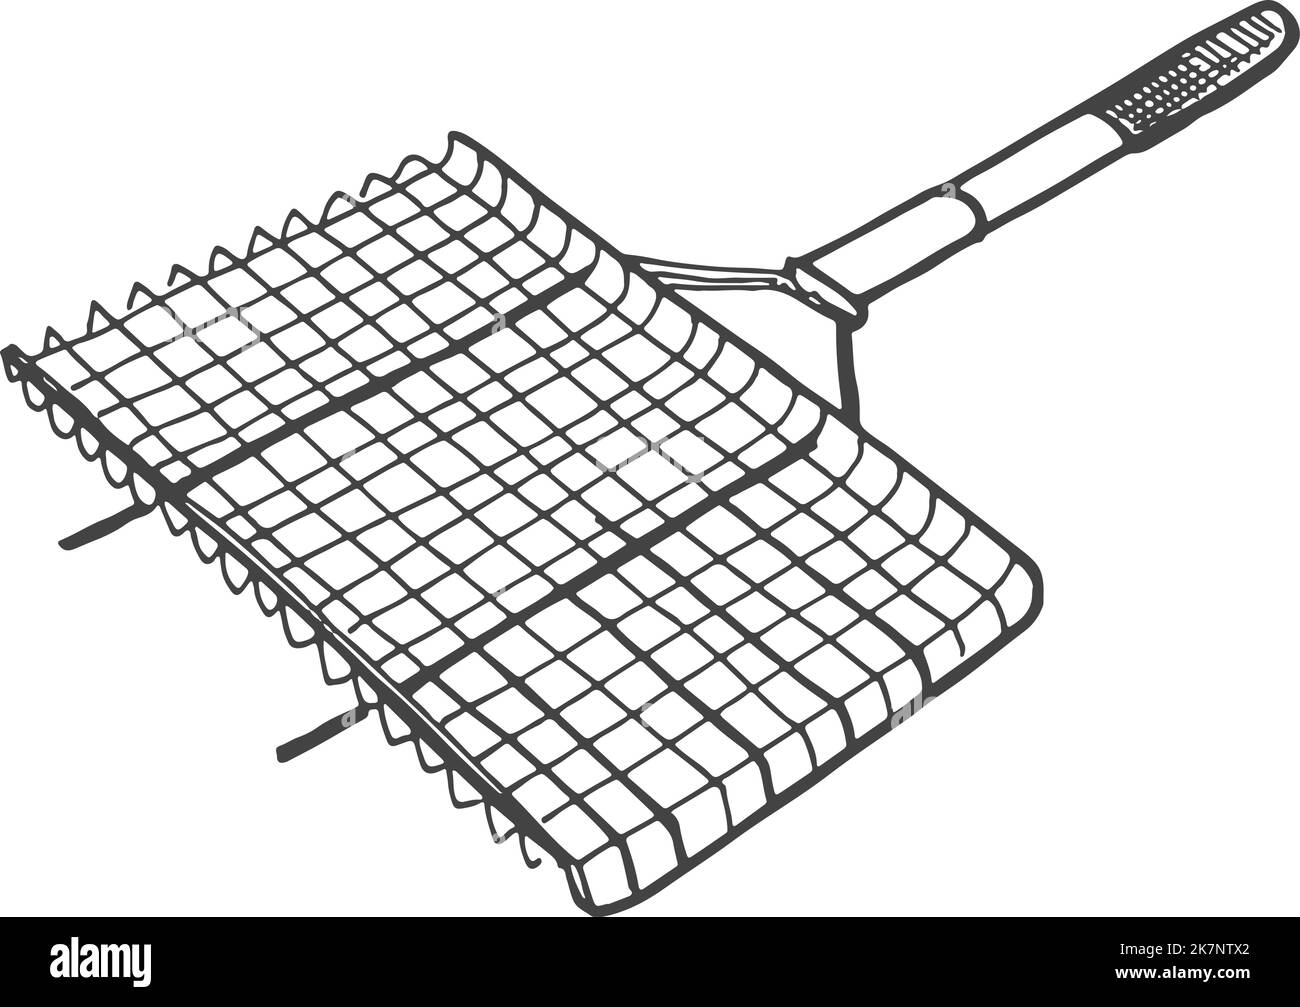 Croquis de grille métallique pour barbecue. Gravure de l'outil gril Illustration de Vecteur